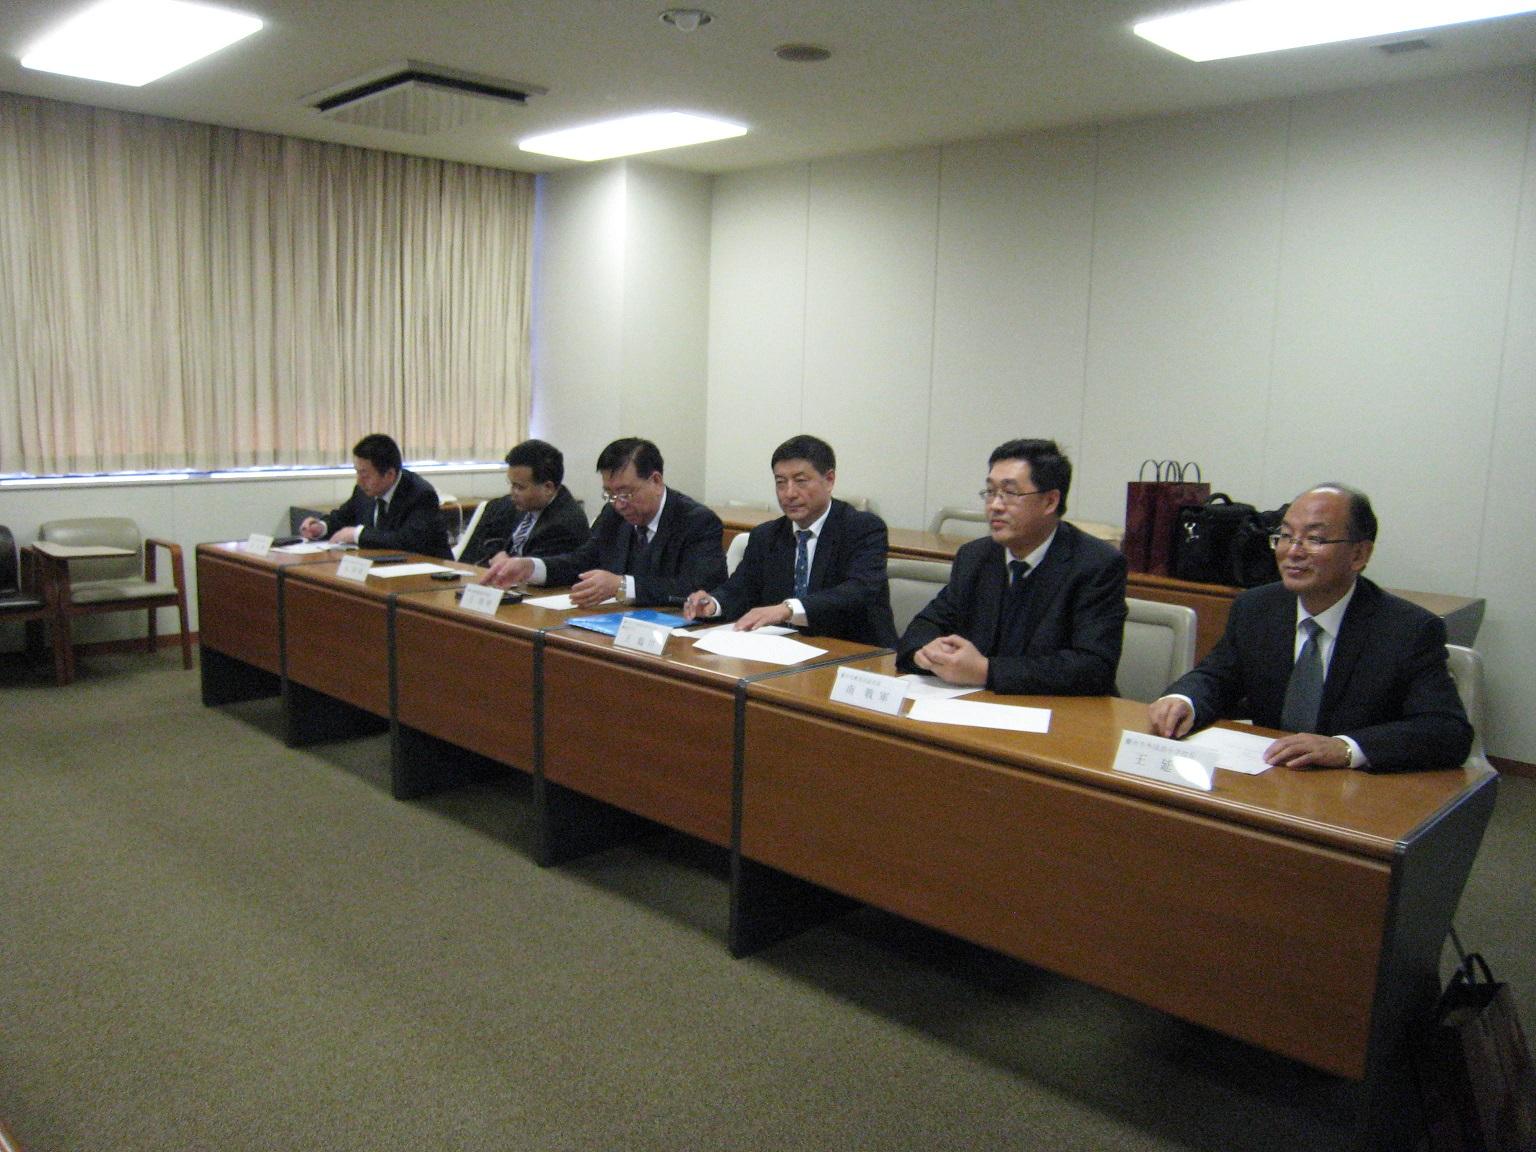 6人のスーツ姿の男性が一列で机に向かい座っている写真。